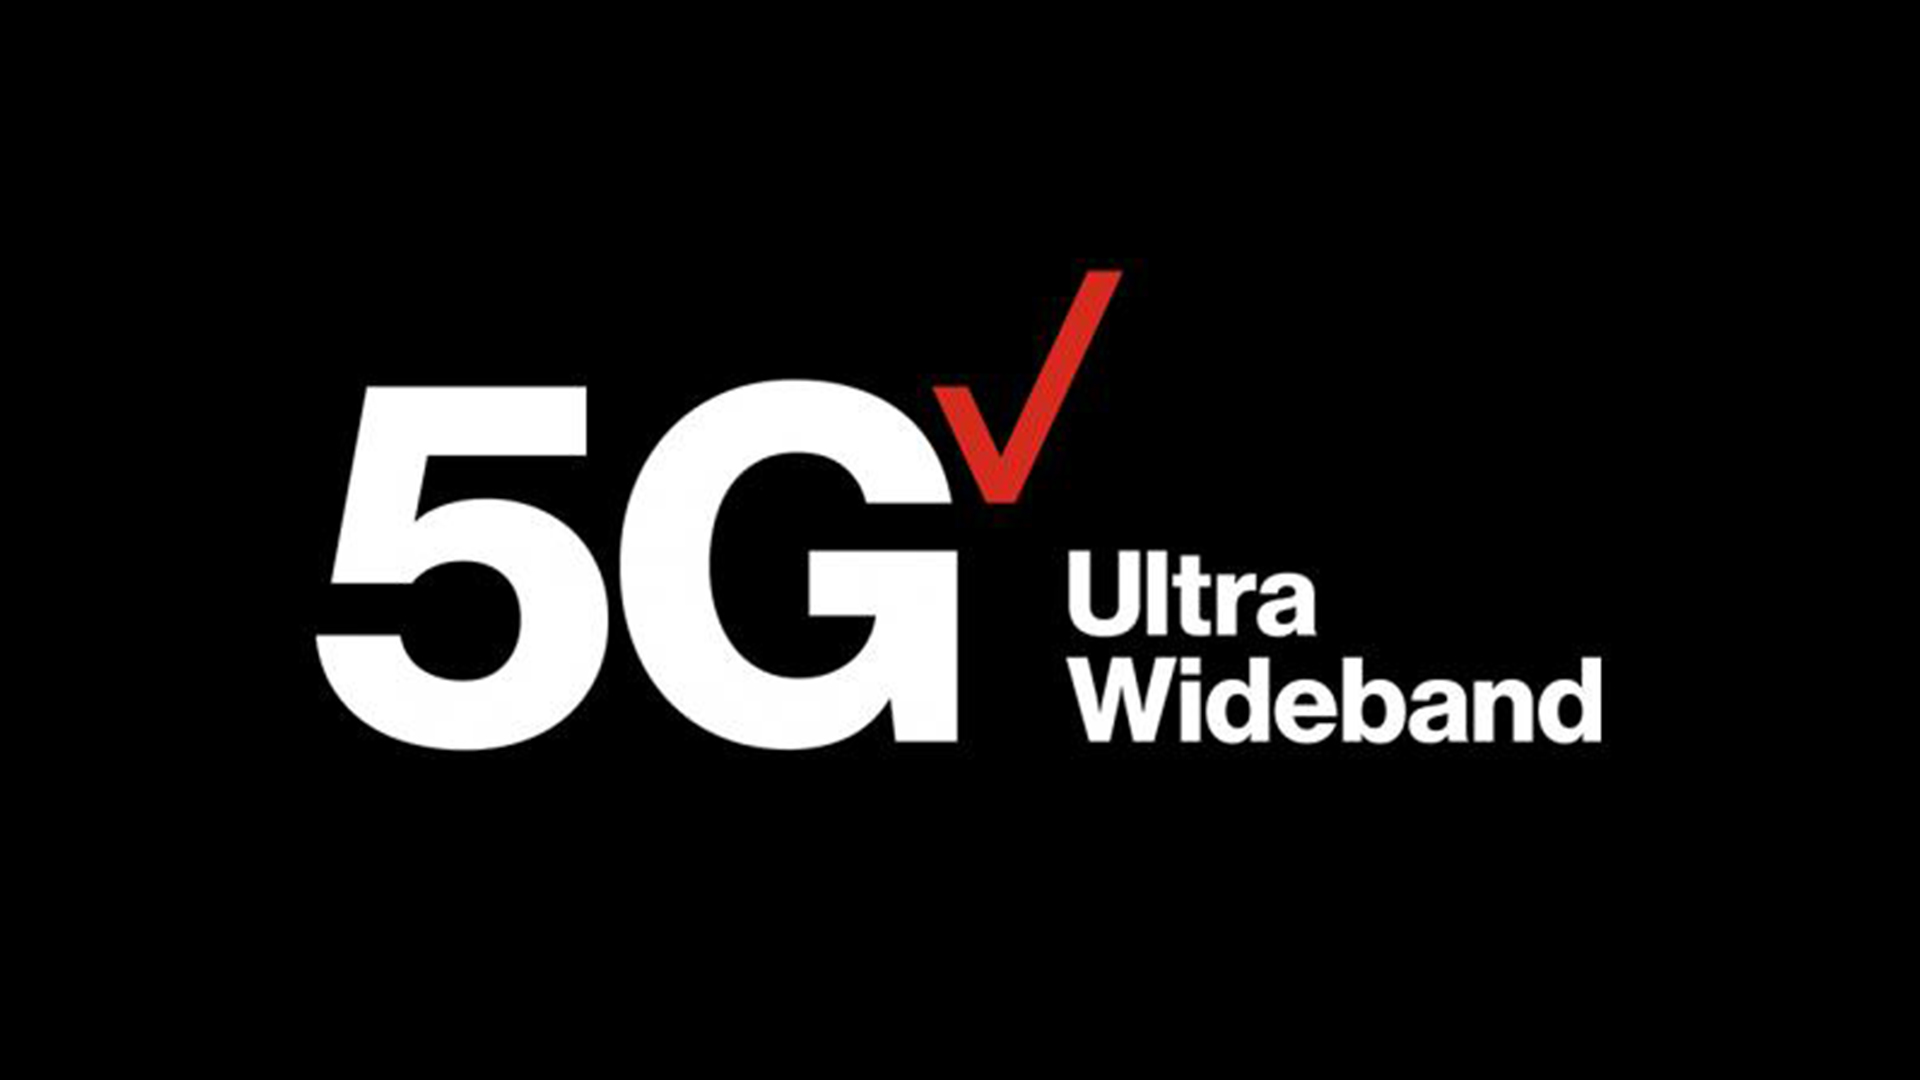 Verizon 5G ultra wideband logo